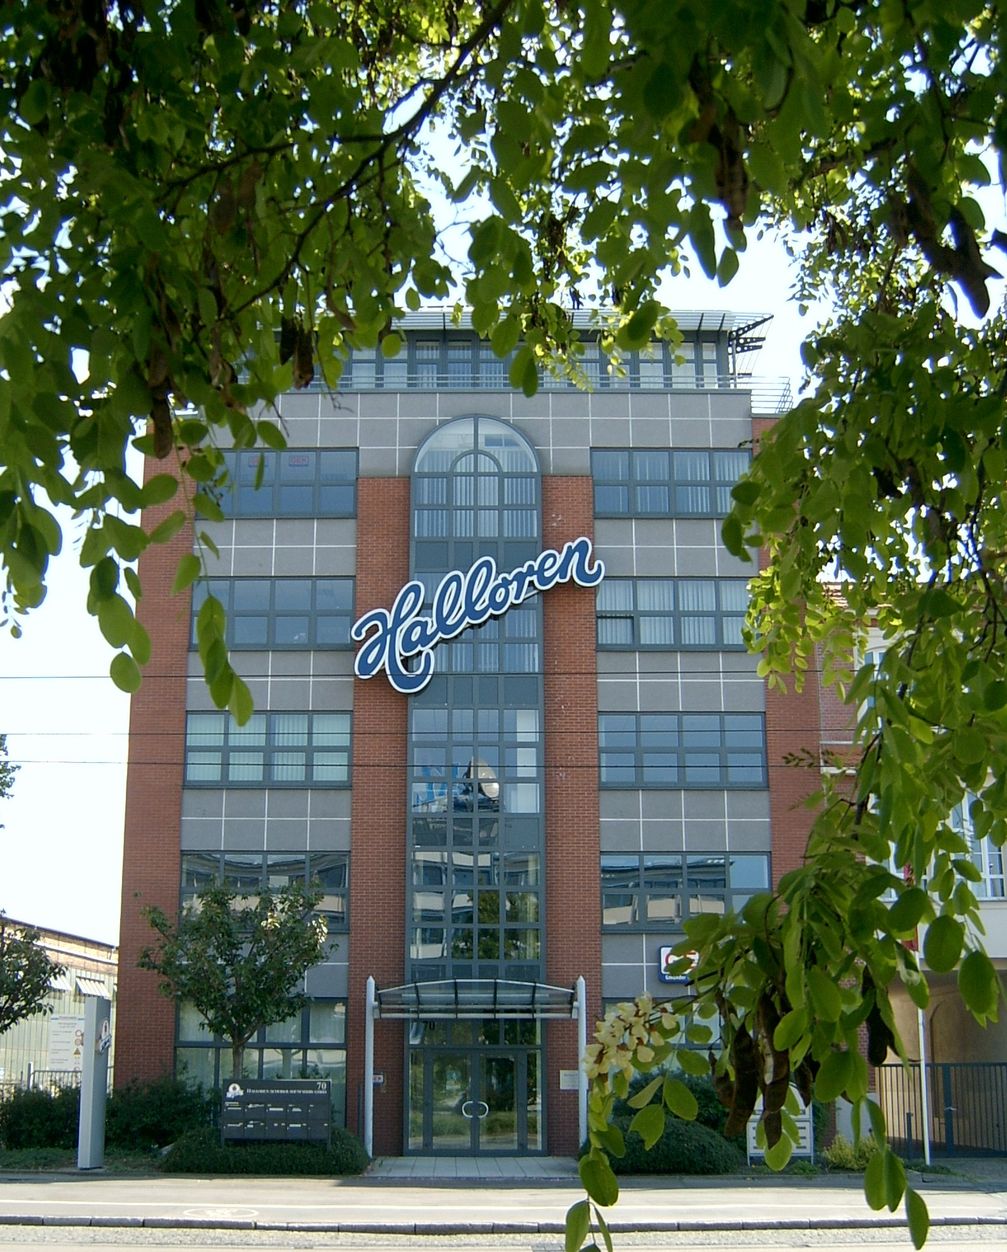 Die Halloren Schokoladenfabrik AG ist die älteste bis heute produzierende Schokoladenfabrik Deutschlands. Haupteingang